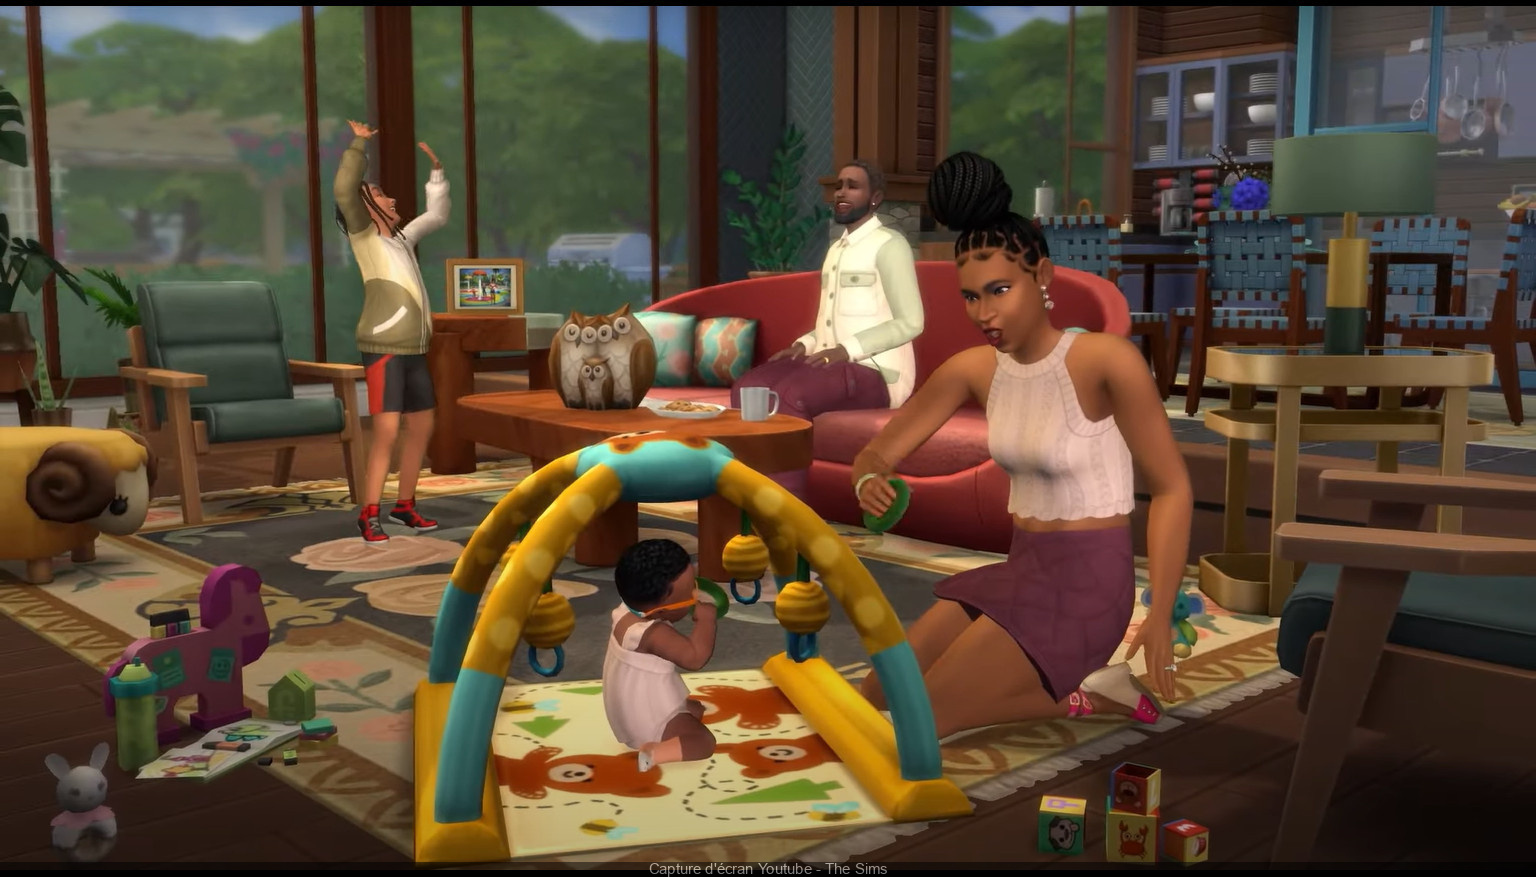 The Sims 4 - Como acelerar a gravidez - Critical Hits